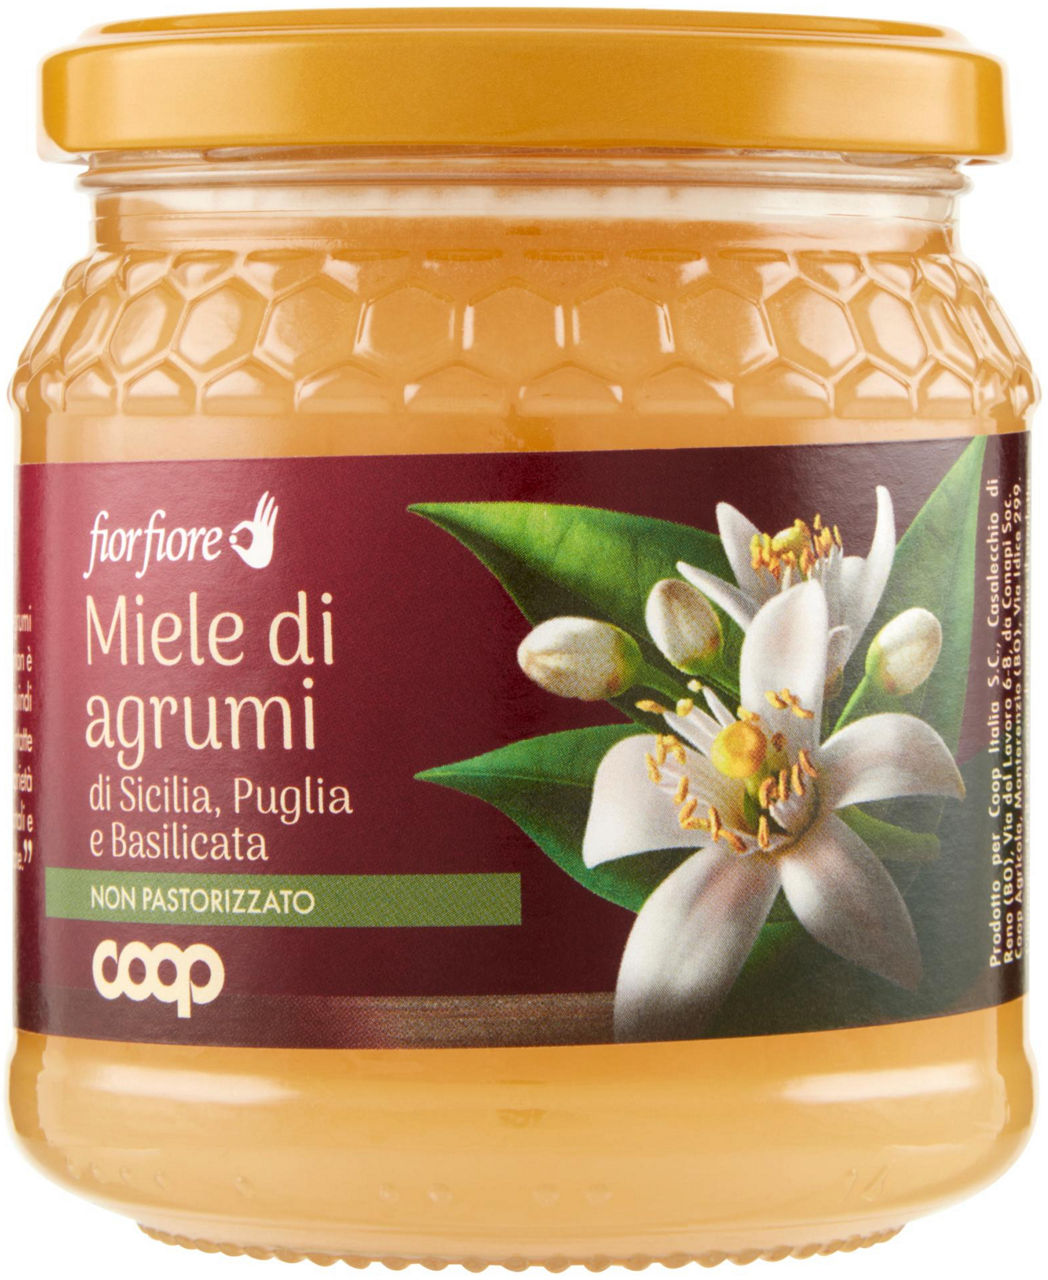 Miele di agrumi di sicilia puglia basilicata fior fiore coop vaso vetro gr.400